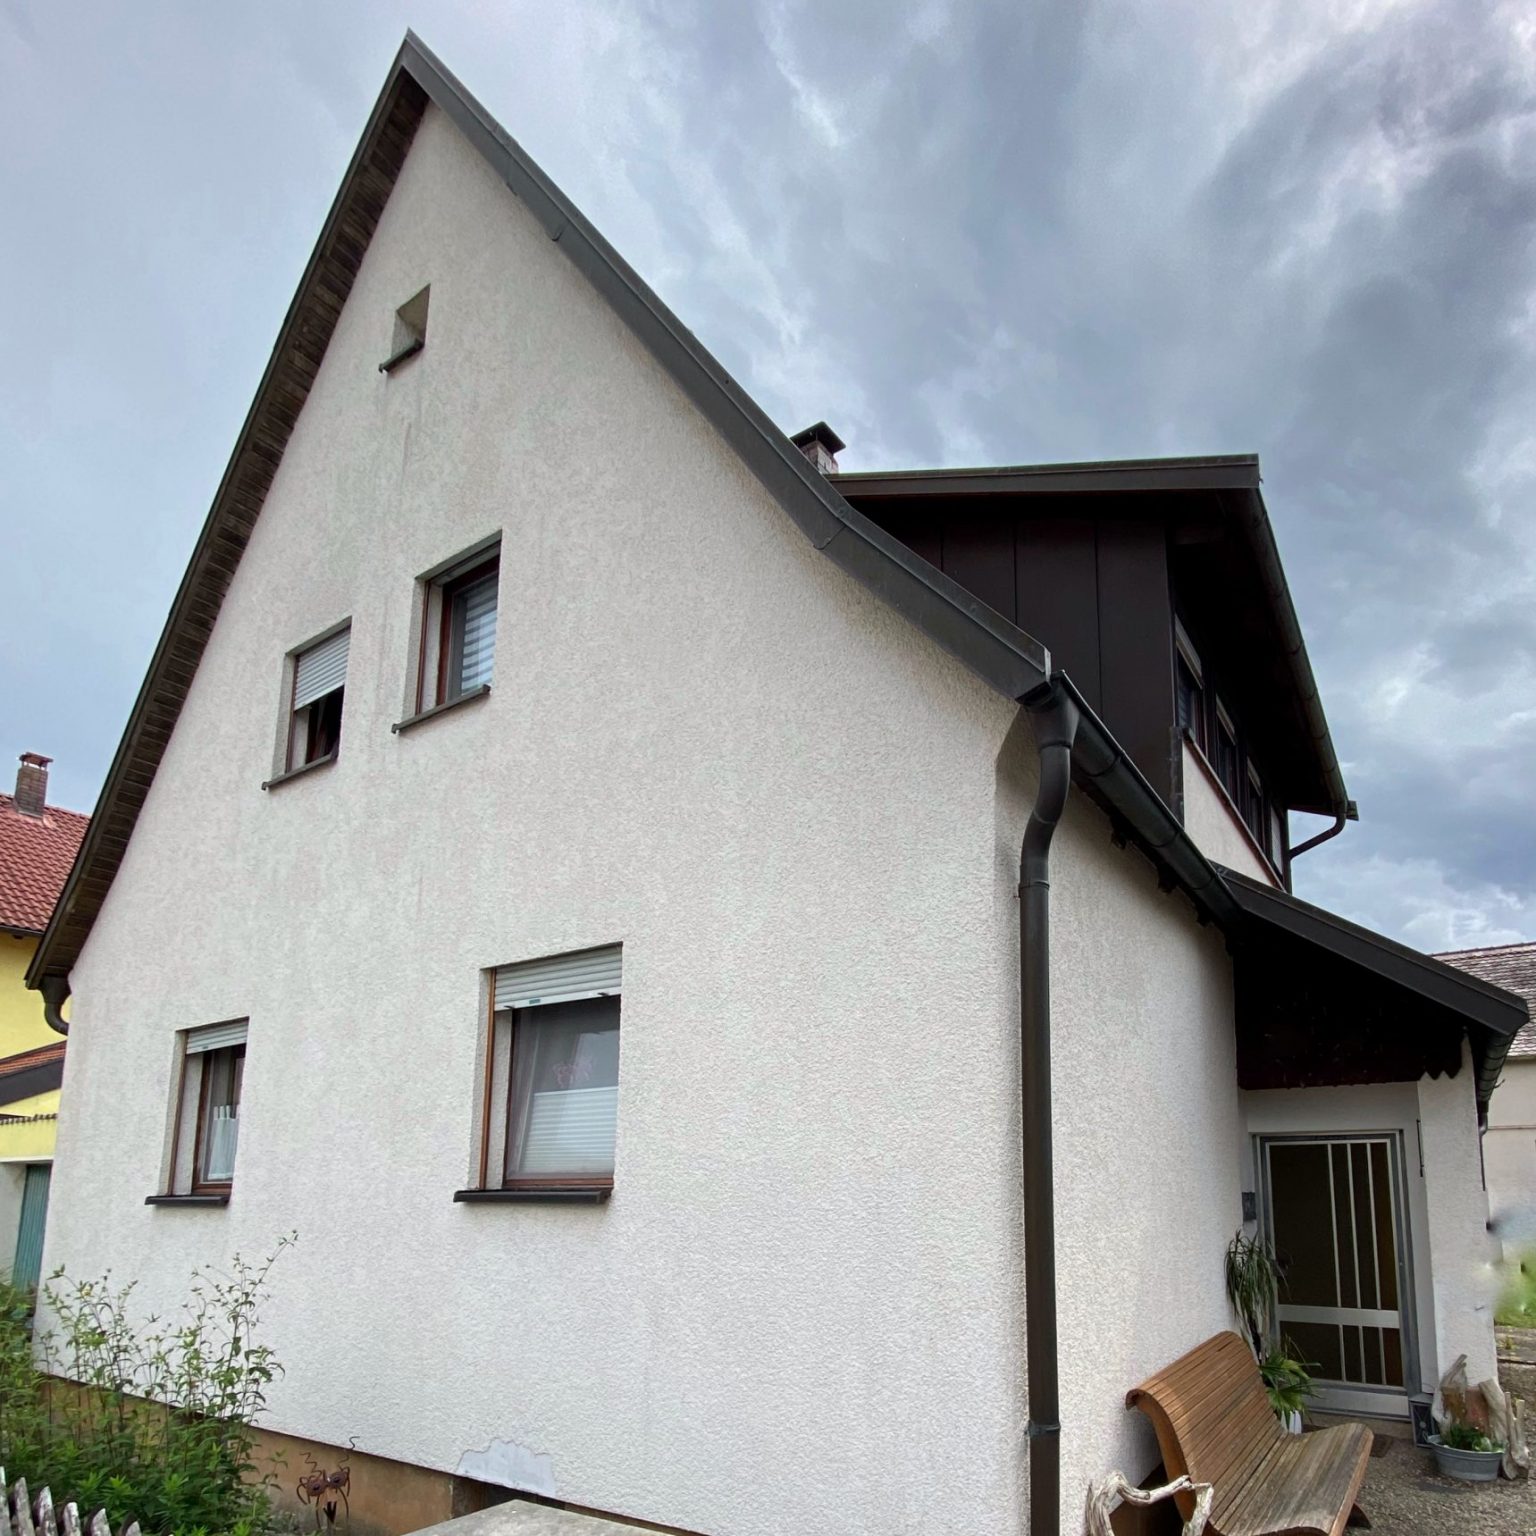 Wählen Sie Schiller Immobilien und profitieren Sie von unserer langjährigen Erfahrung und Expertise auf dem Immobilienmarkt in Weißenburg und Gunzenhausen.